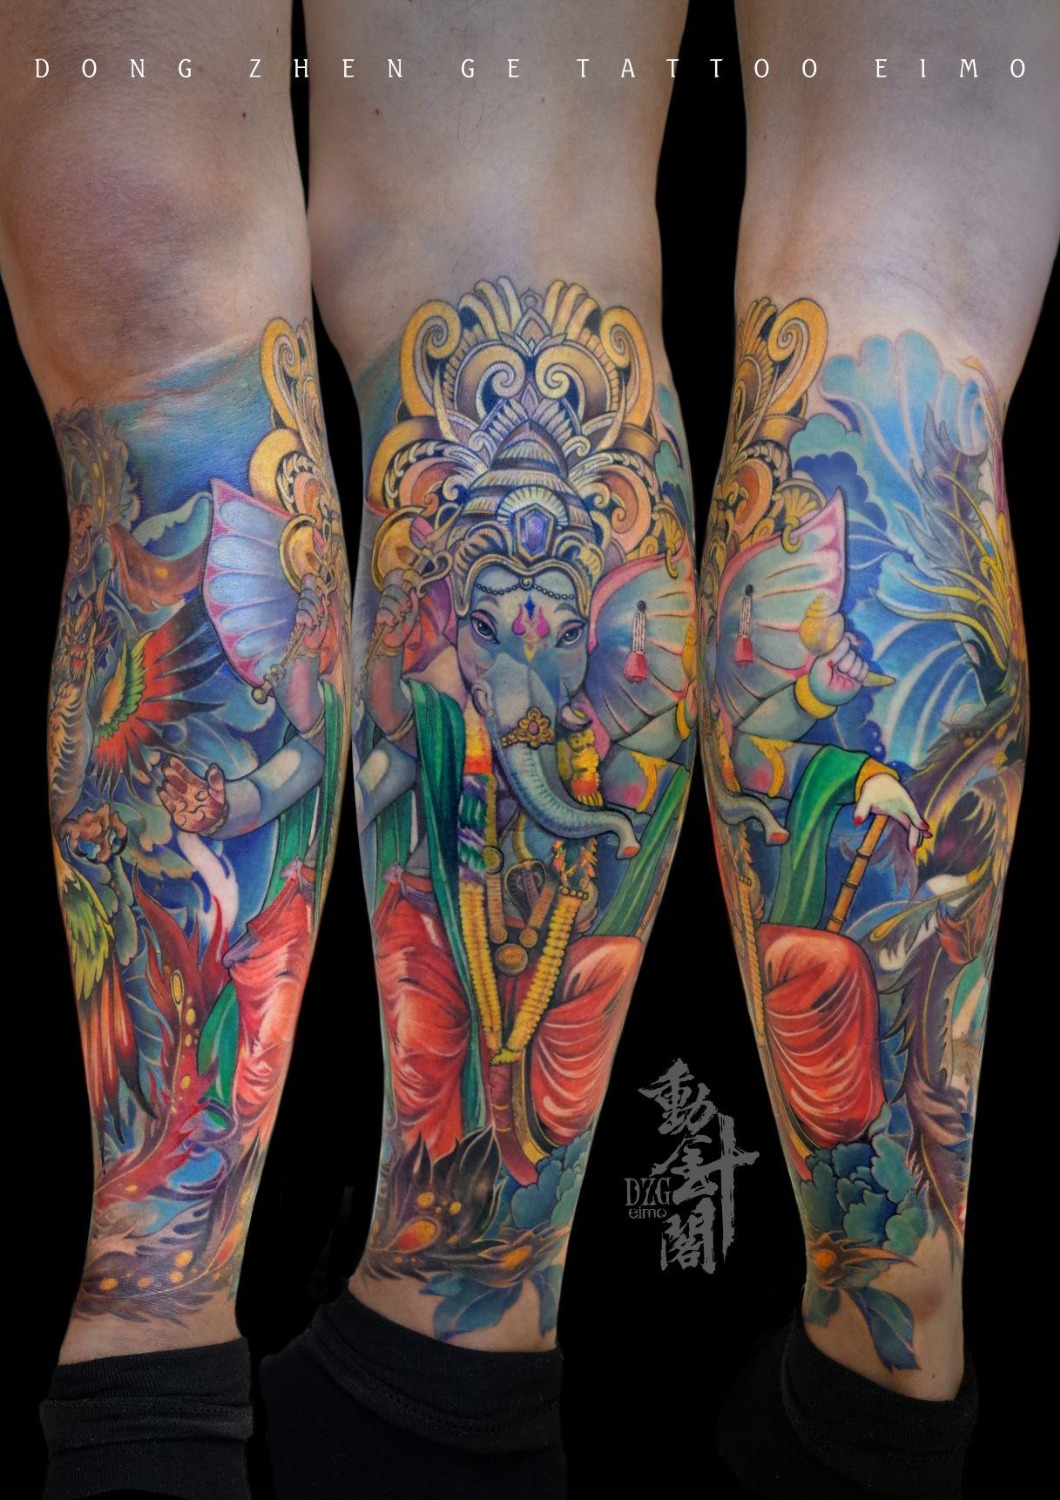 CUKE — Ganesh Tattoo I did on a foot (full leg project)